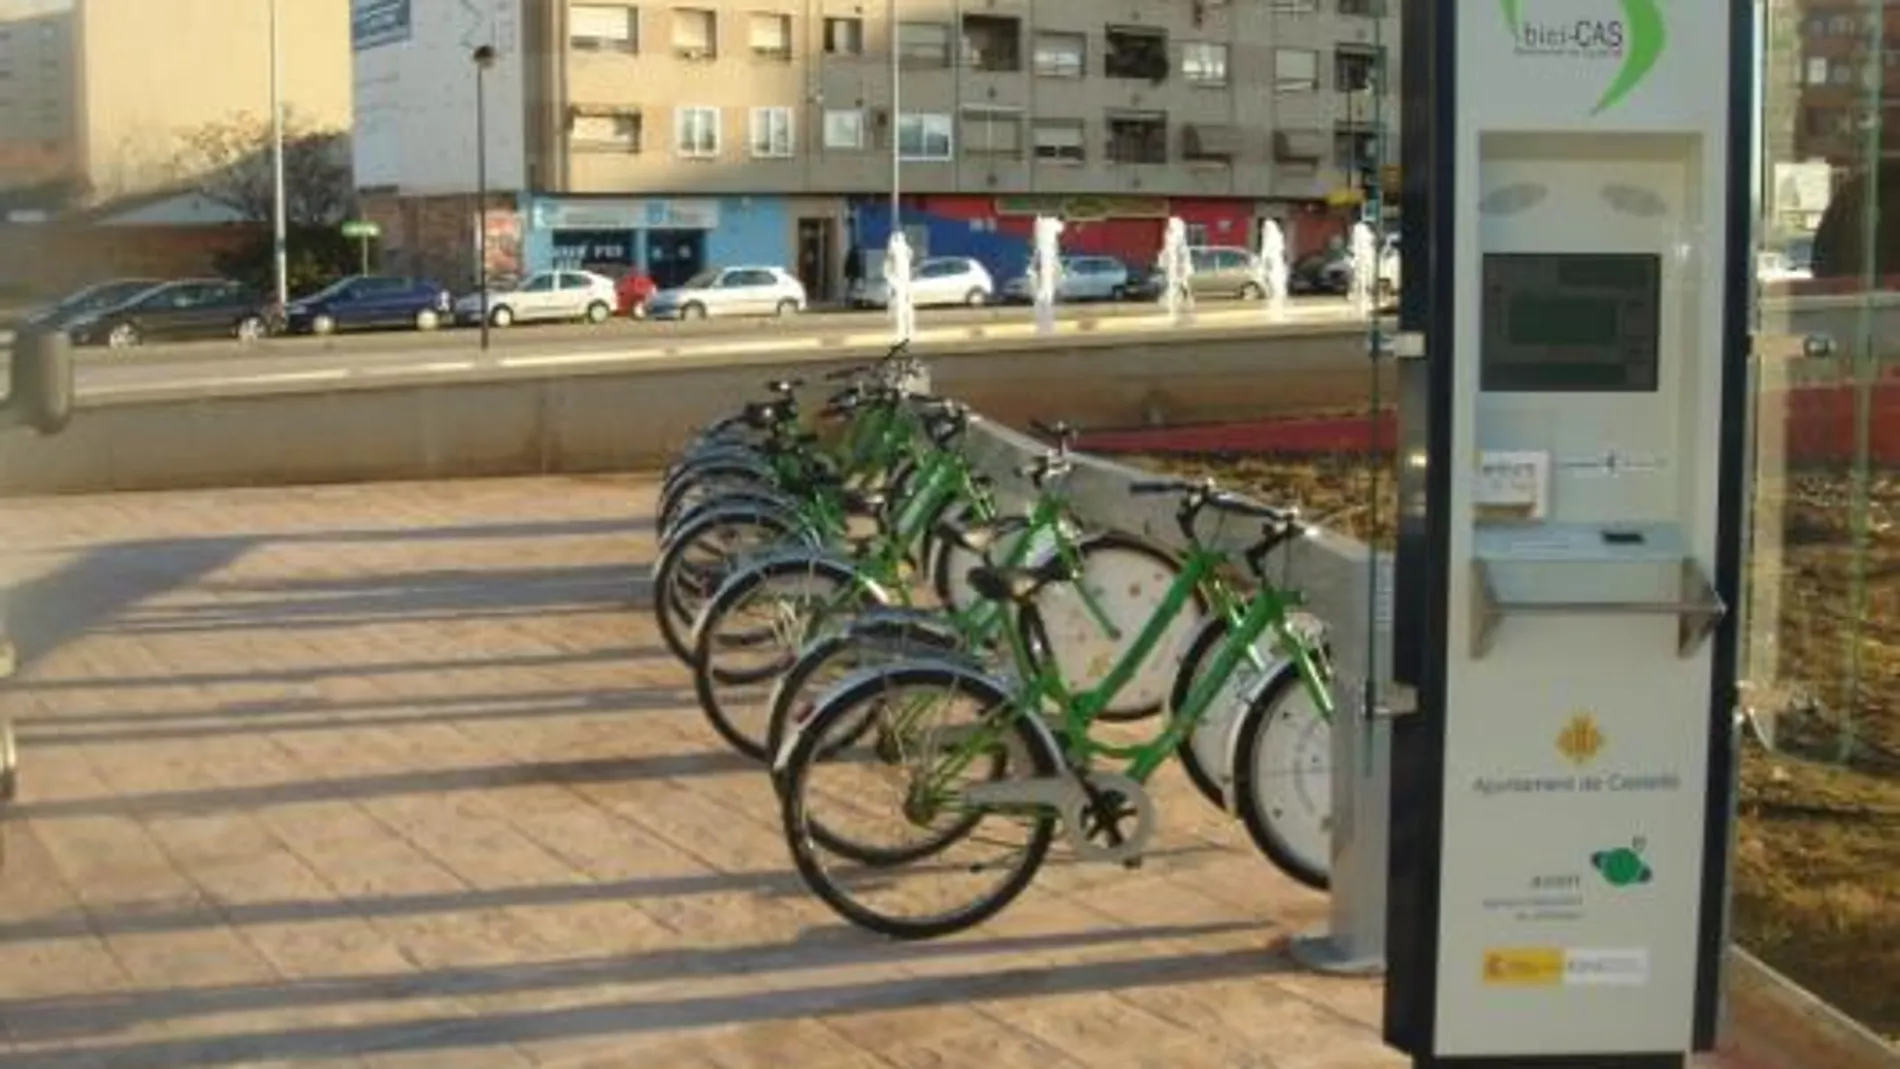 Infraestructuras destina 180.000 euros para ampliar en 240 bicicletas el sistema de préstamo de Castellón